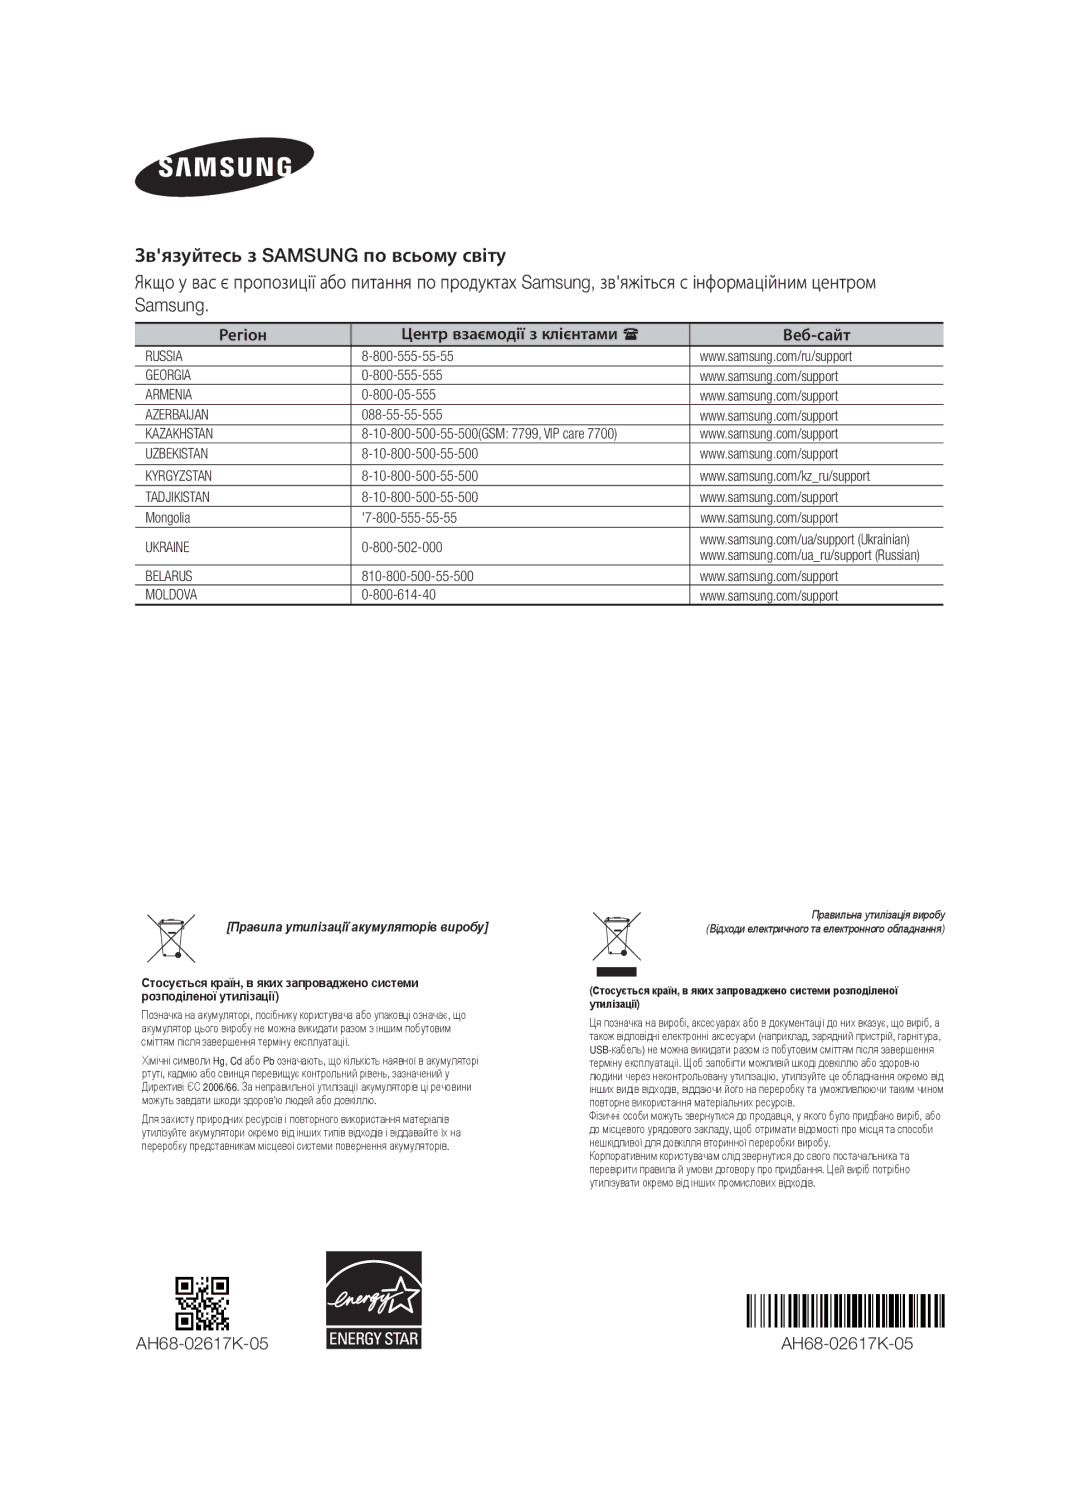 Samsung HW-F750/RU manual AH68-02617K-05, Регіон Центр взаємодії з клієнтами Веб-сайт 